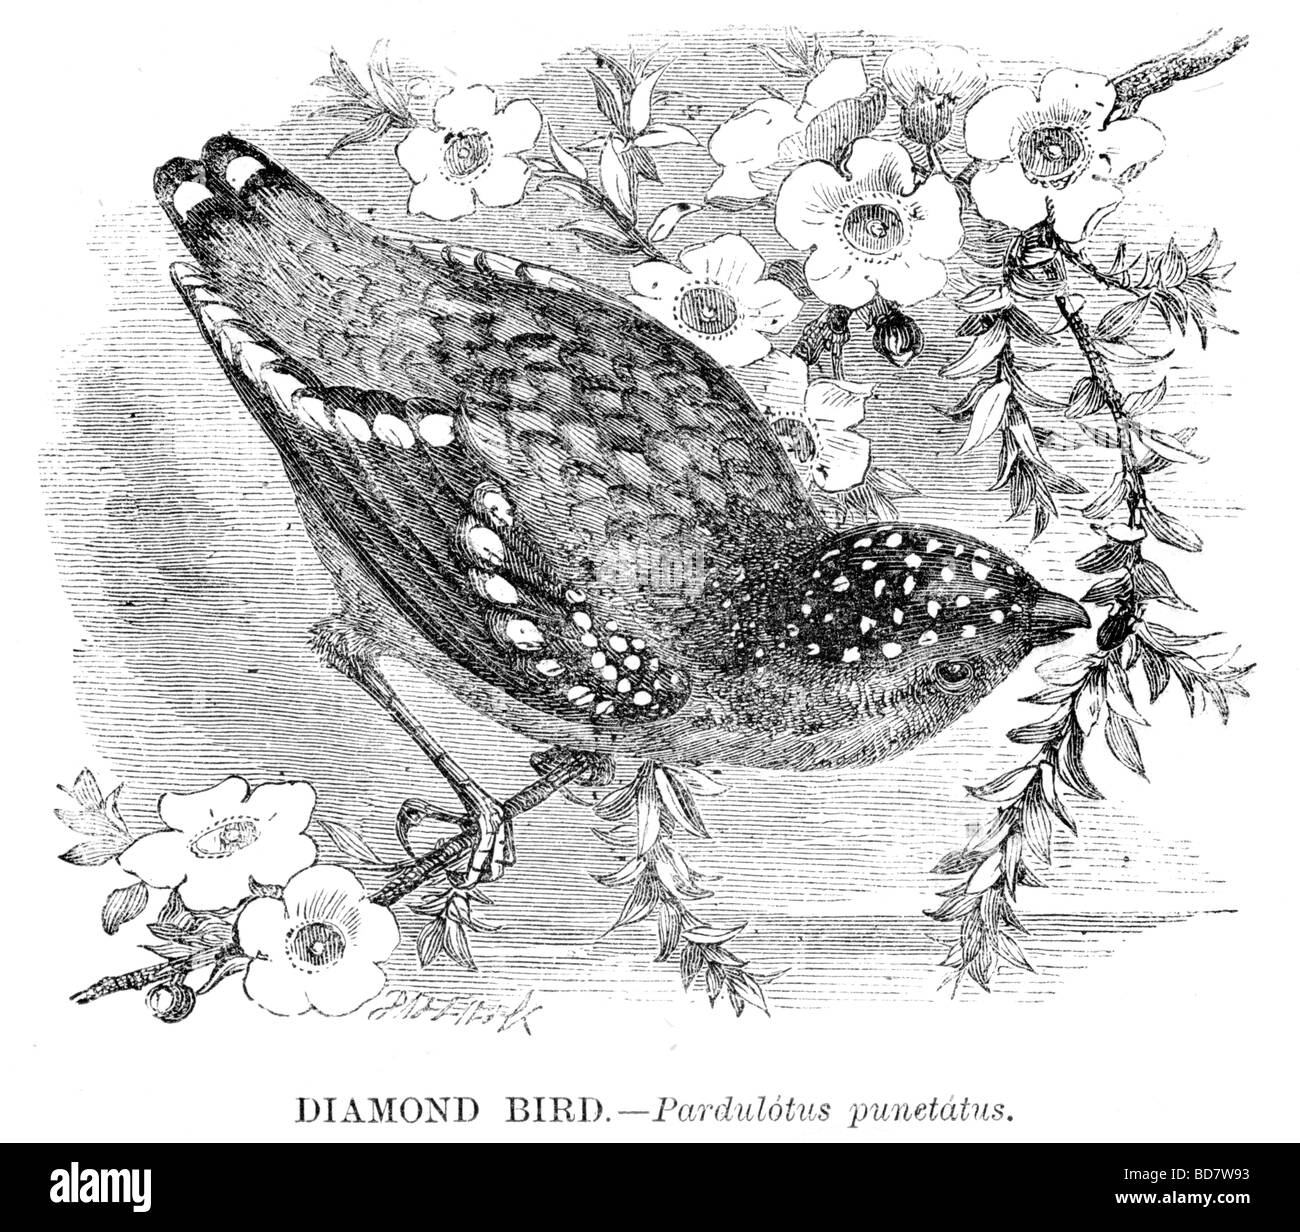 diamond bird pardulotus punetatus Stock Photo